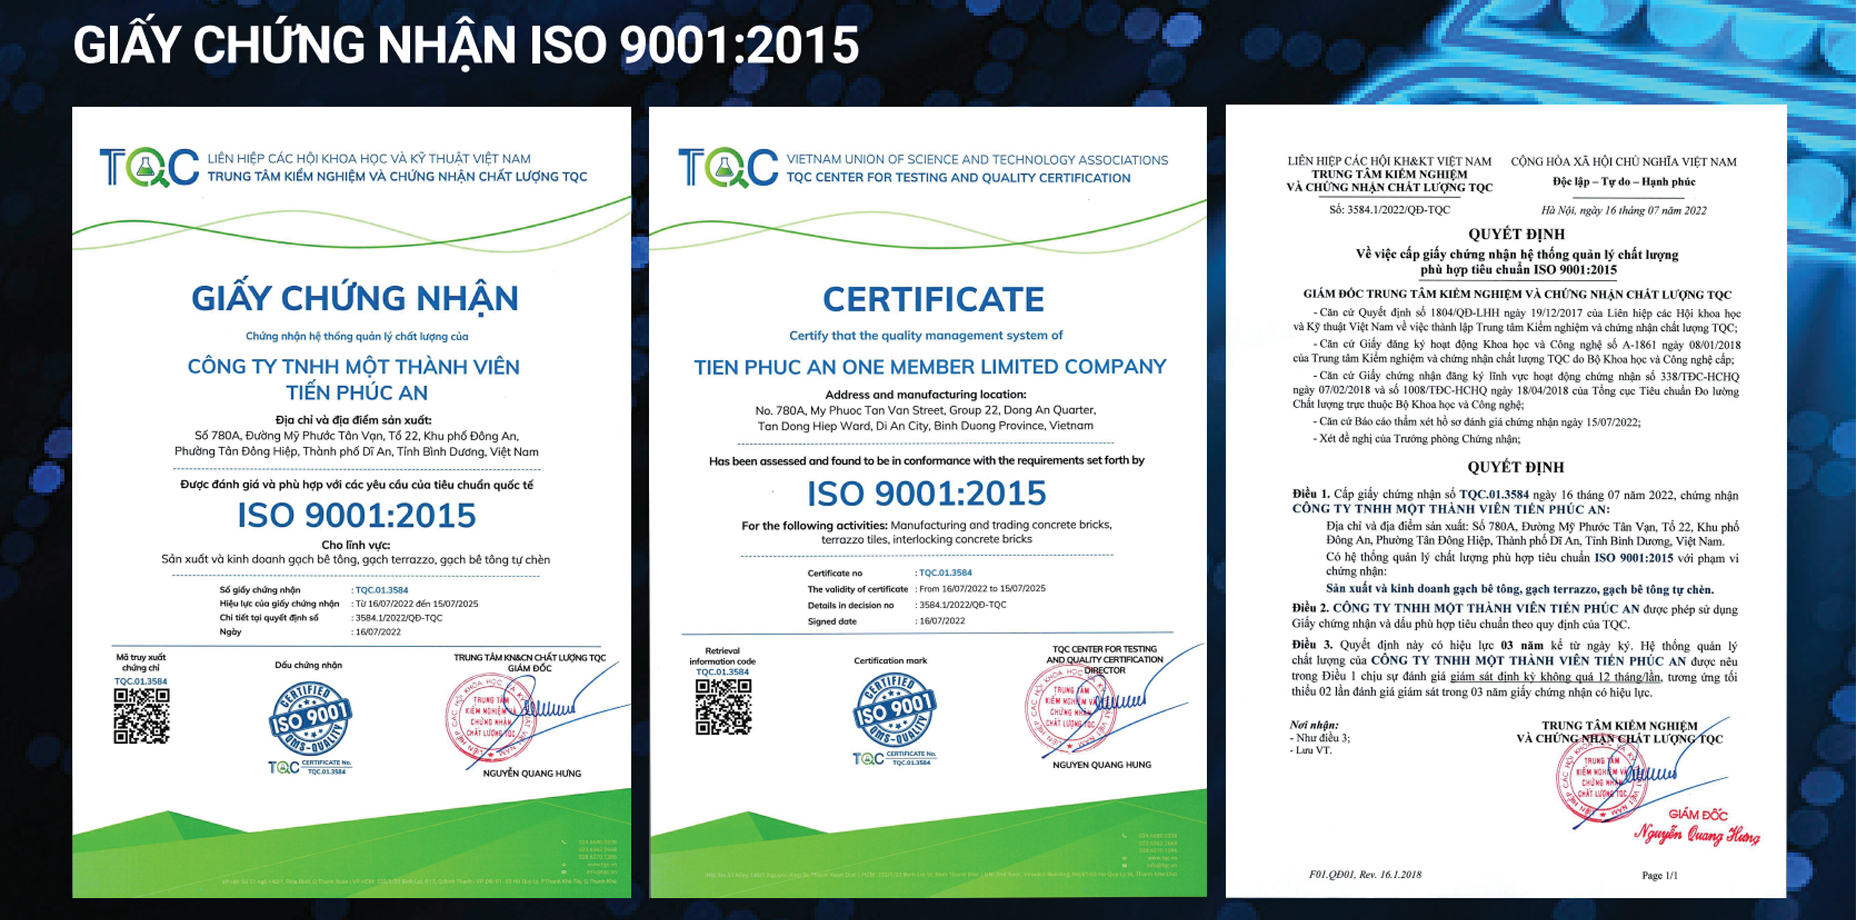 Giấy chứng nhận ISO 9001:2015 - Gạch Tiến Phúc An - Công Ty TNHH Một Thành Viên Tiến Phúc An